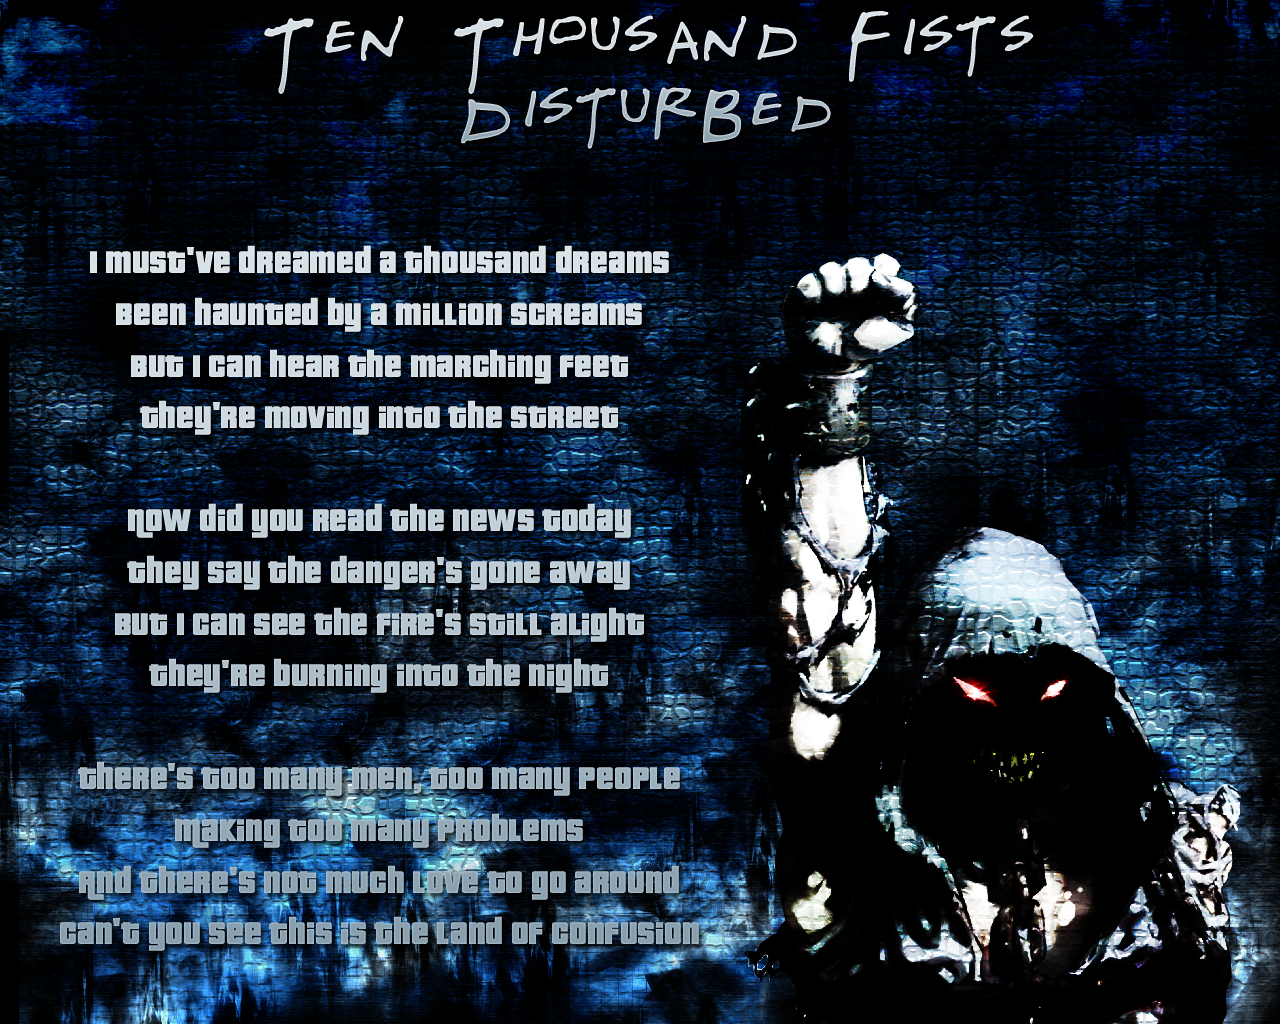 Album disturbed fist lyric ten thousand BBW